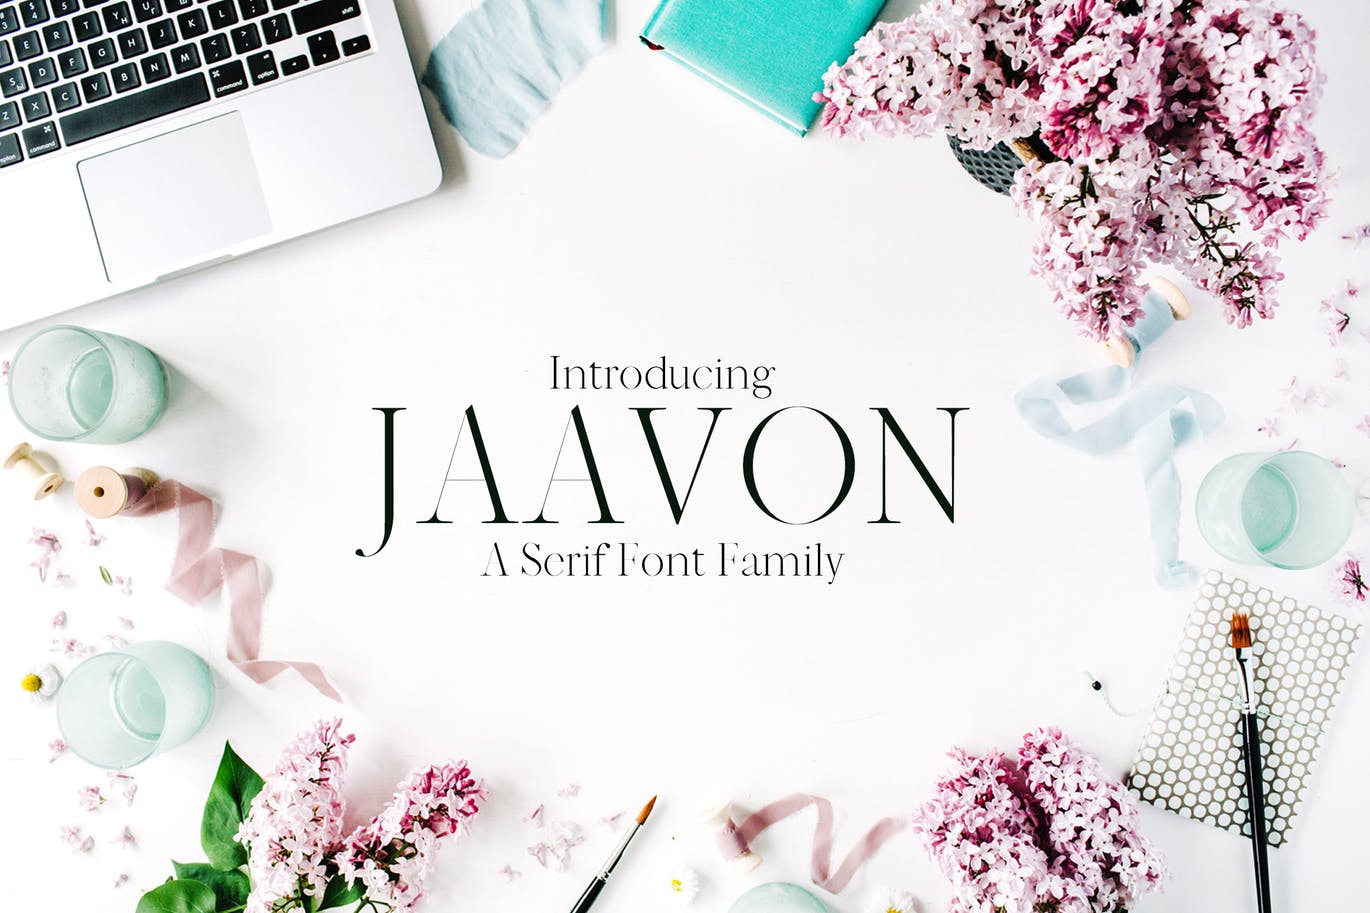 Jaavon serif font to craft logos